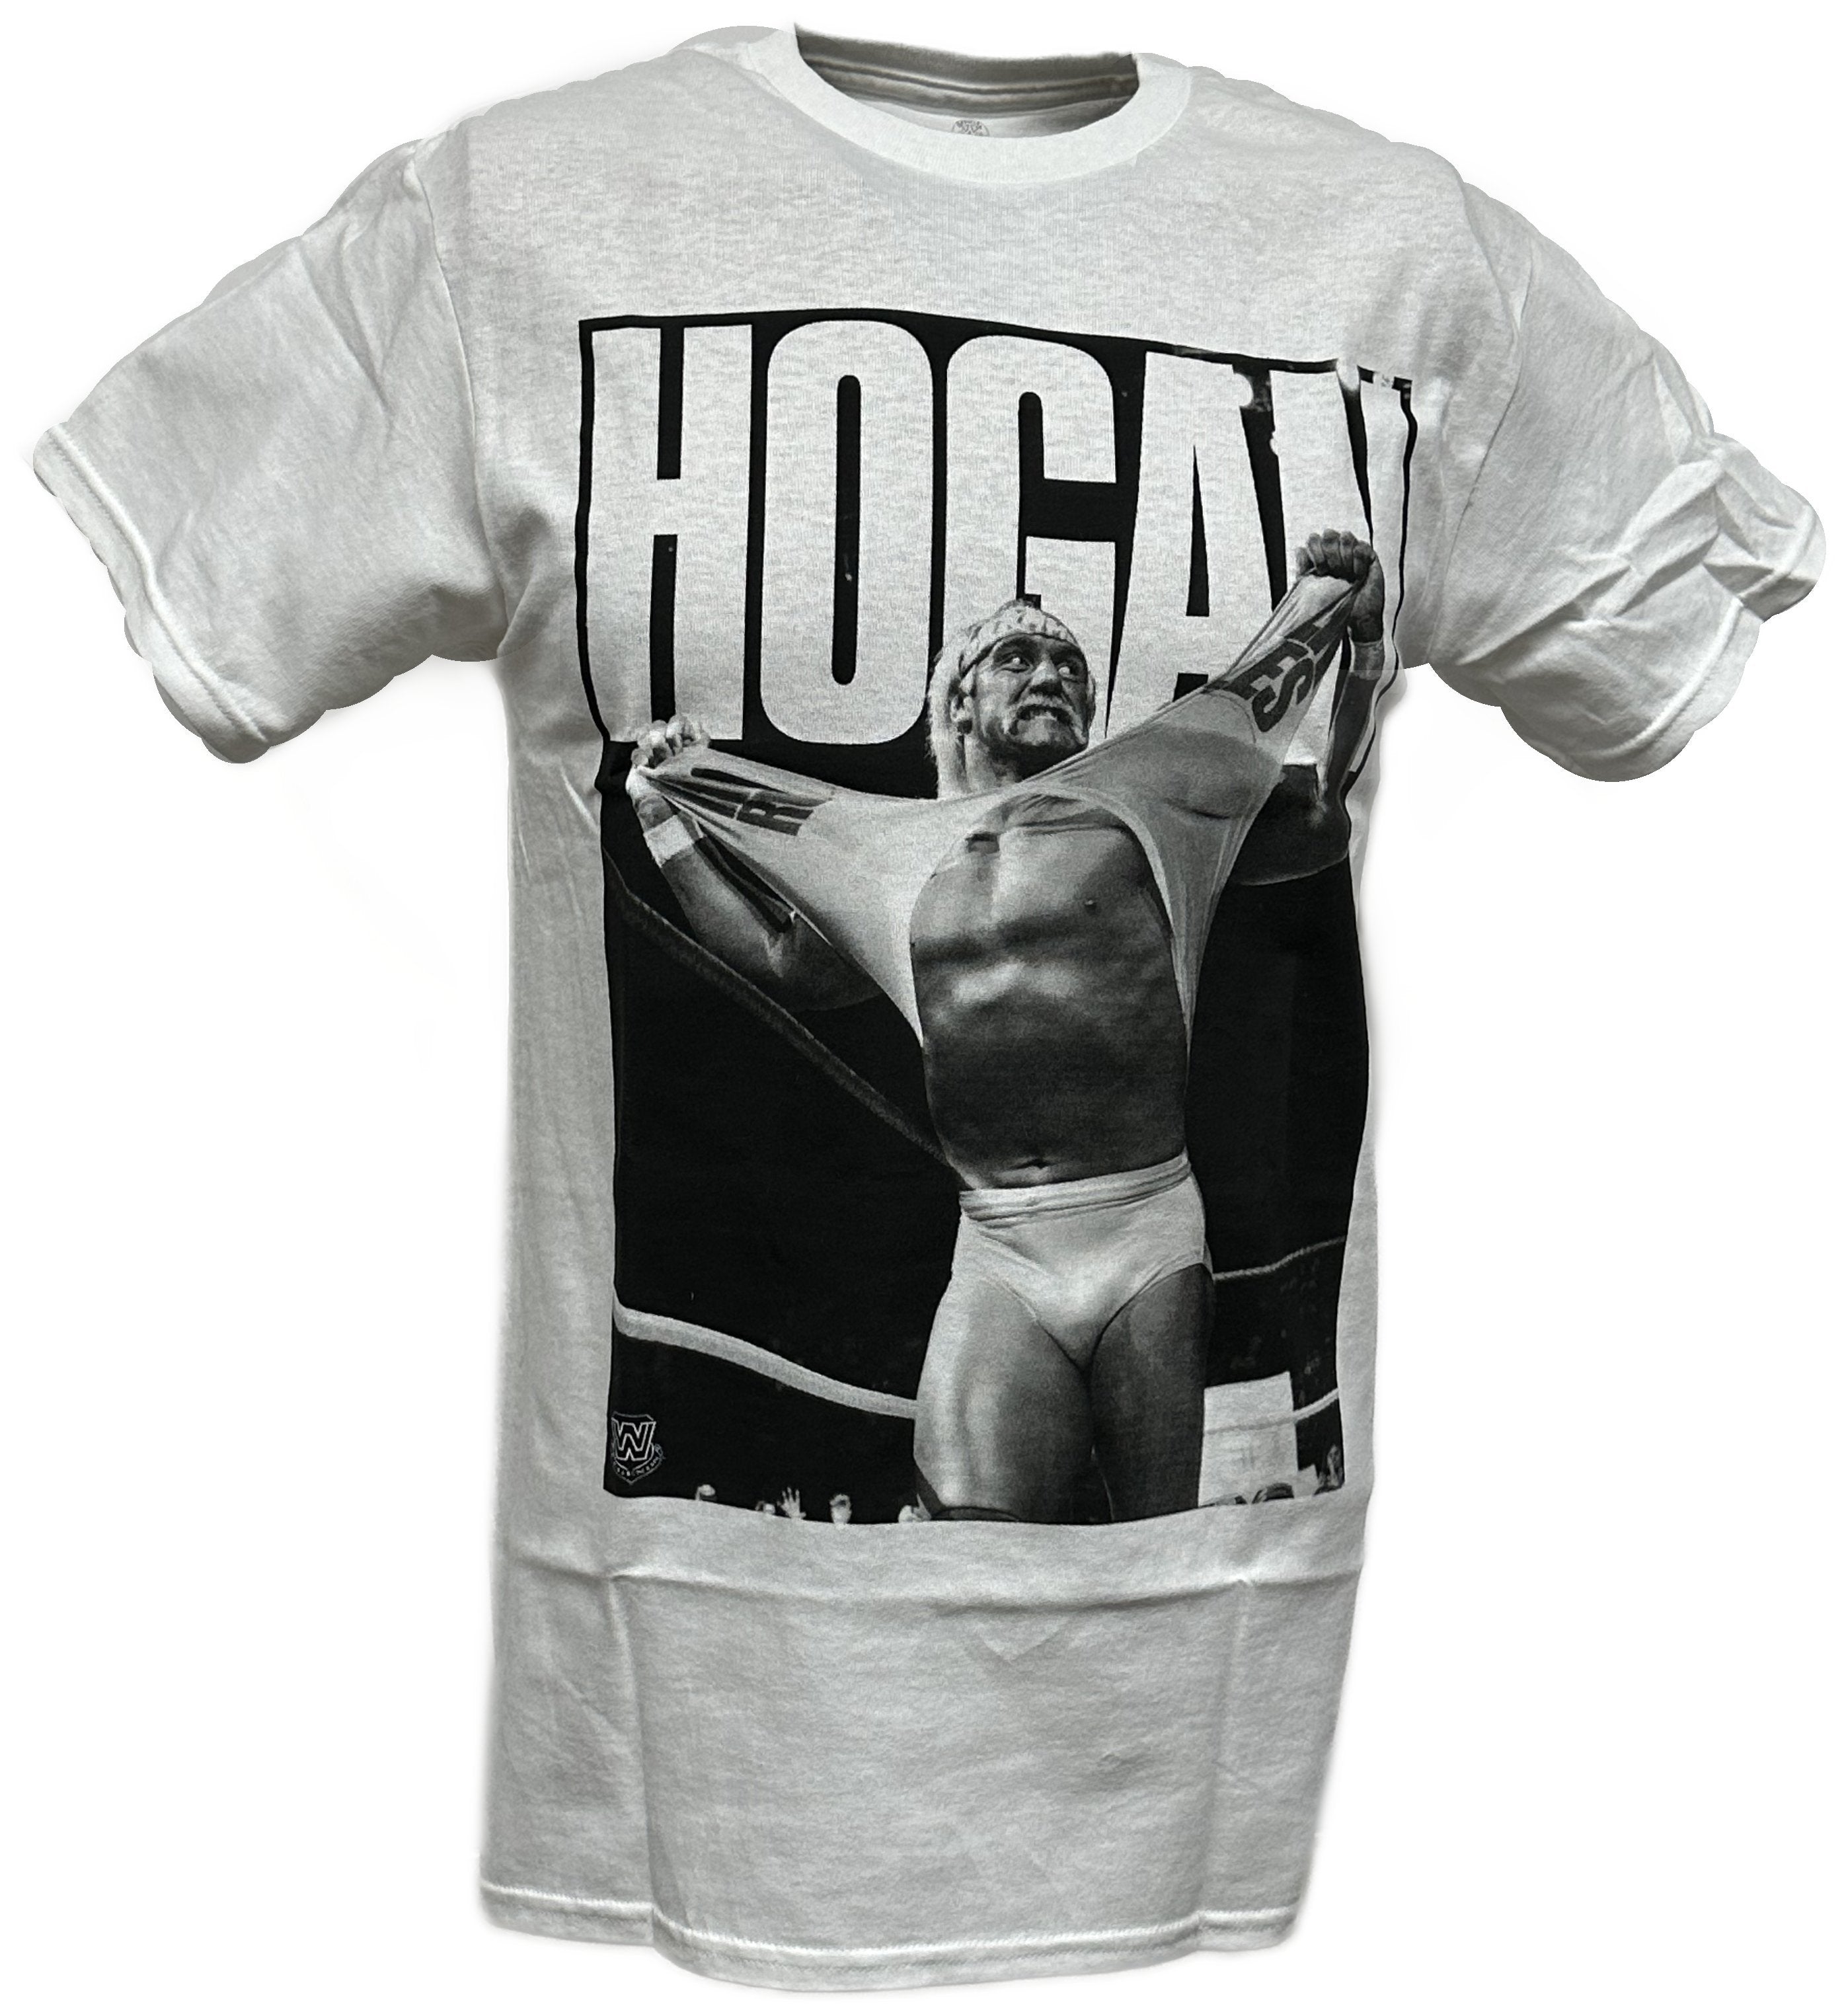 hulk hogan definitive superstar wwe mens white t shirt 9251 nheav